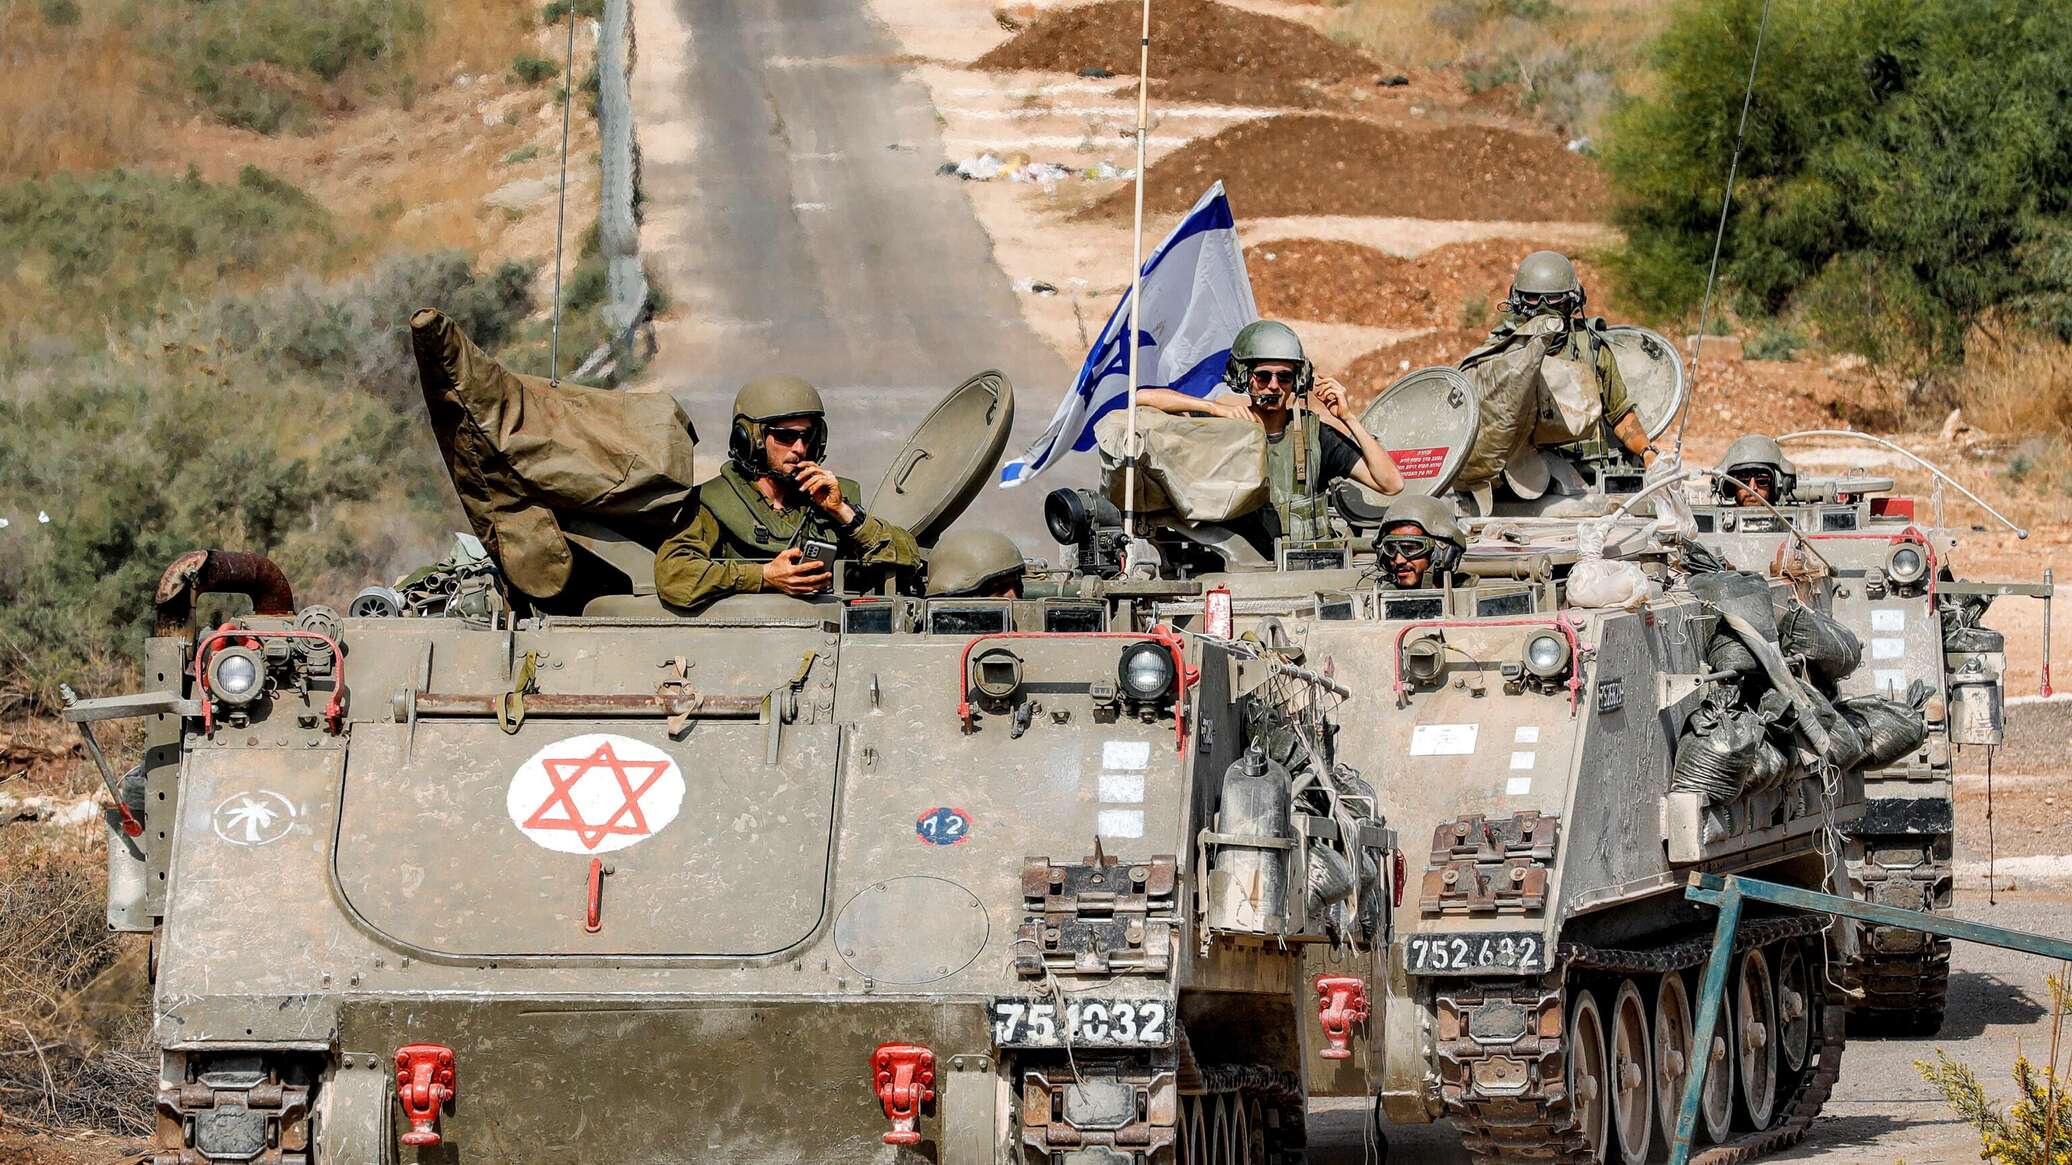 الجيش الإسرائيلي: لا إشارة على وجود رهائن في مستشفى الشفاء